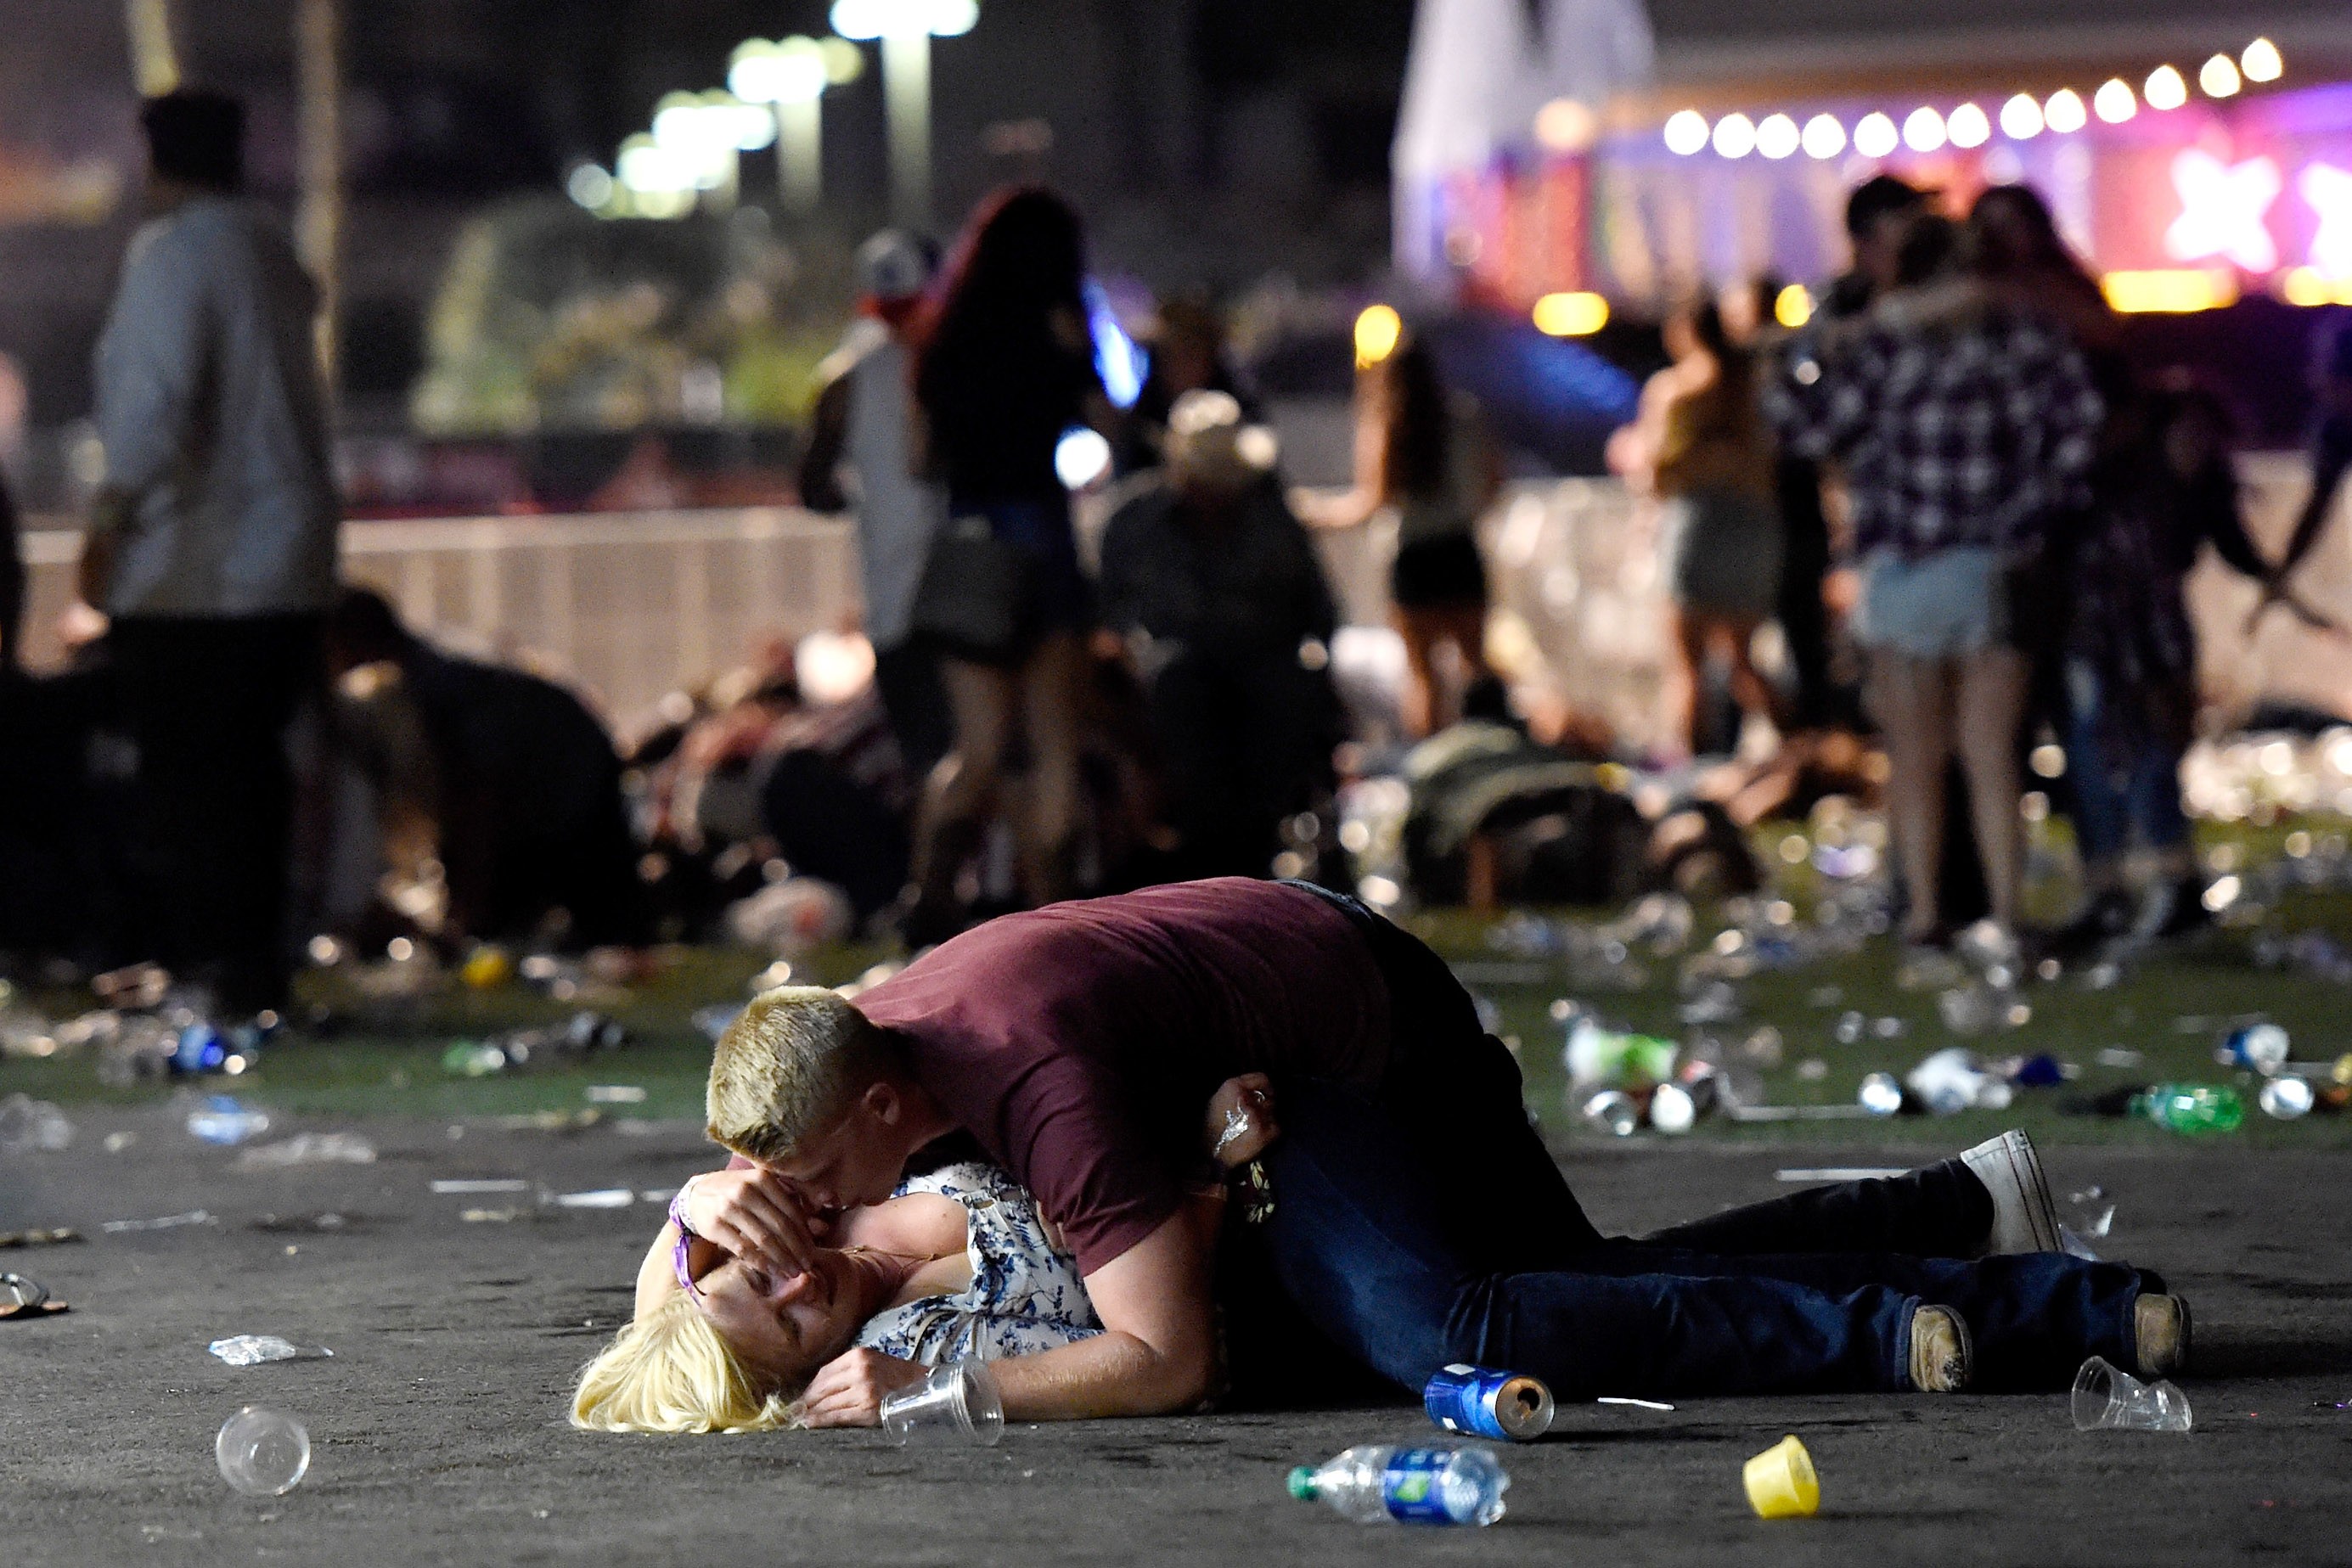 Foto feita no atentado de Las Vegas, em outubro de 2017 (Foto: David Becker/Getty Images)